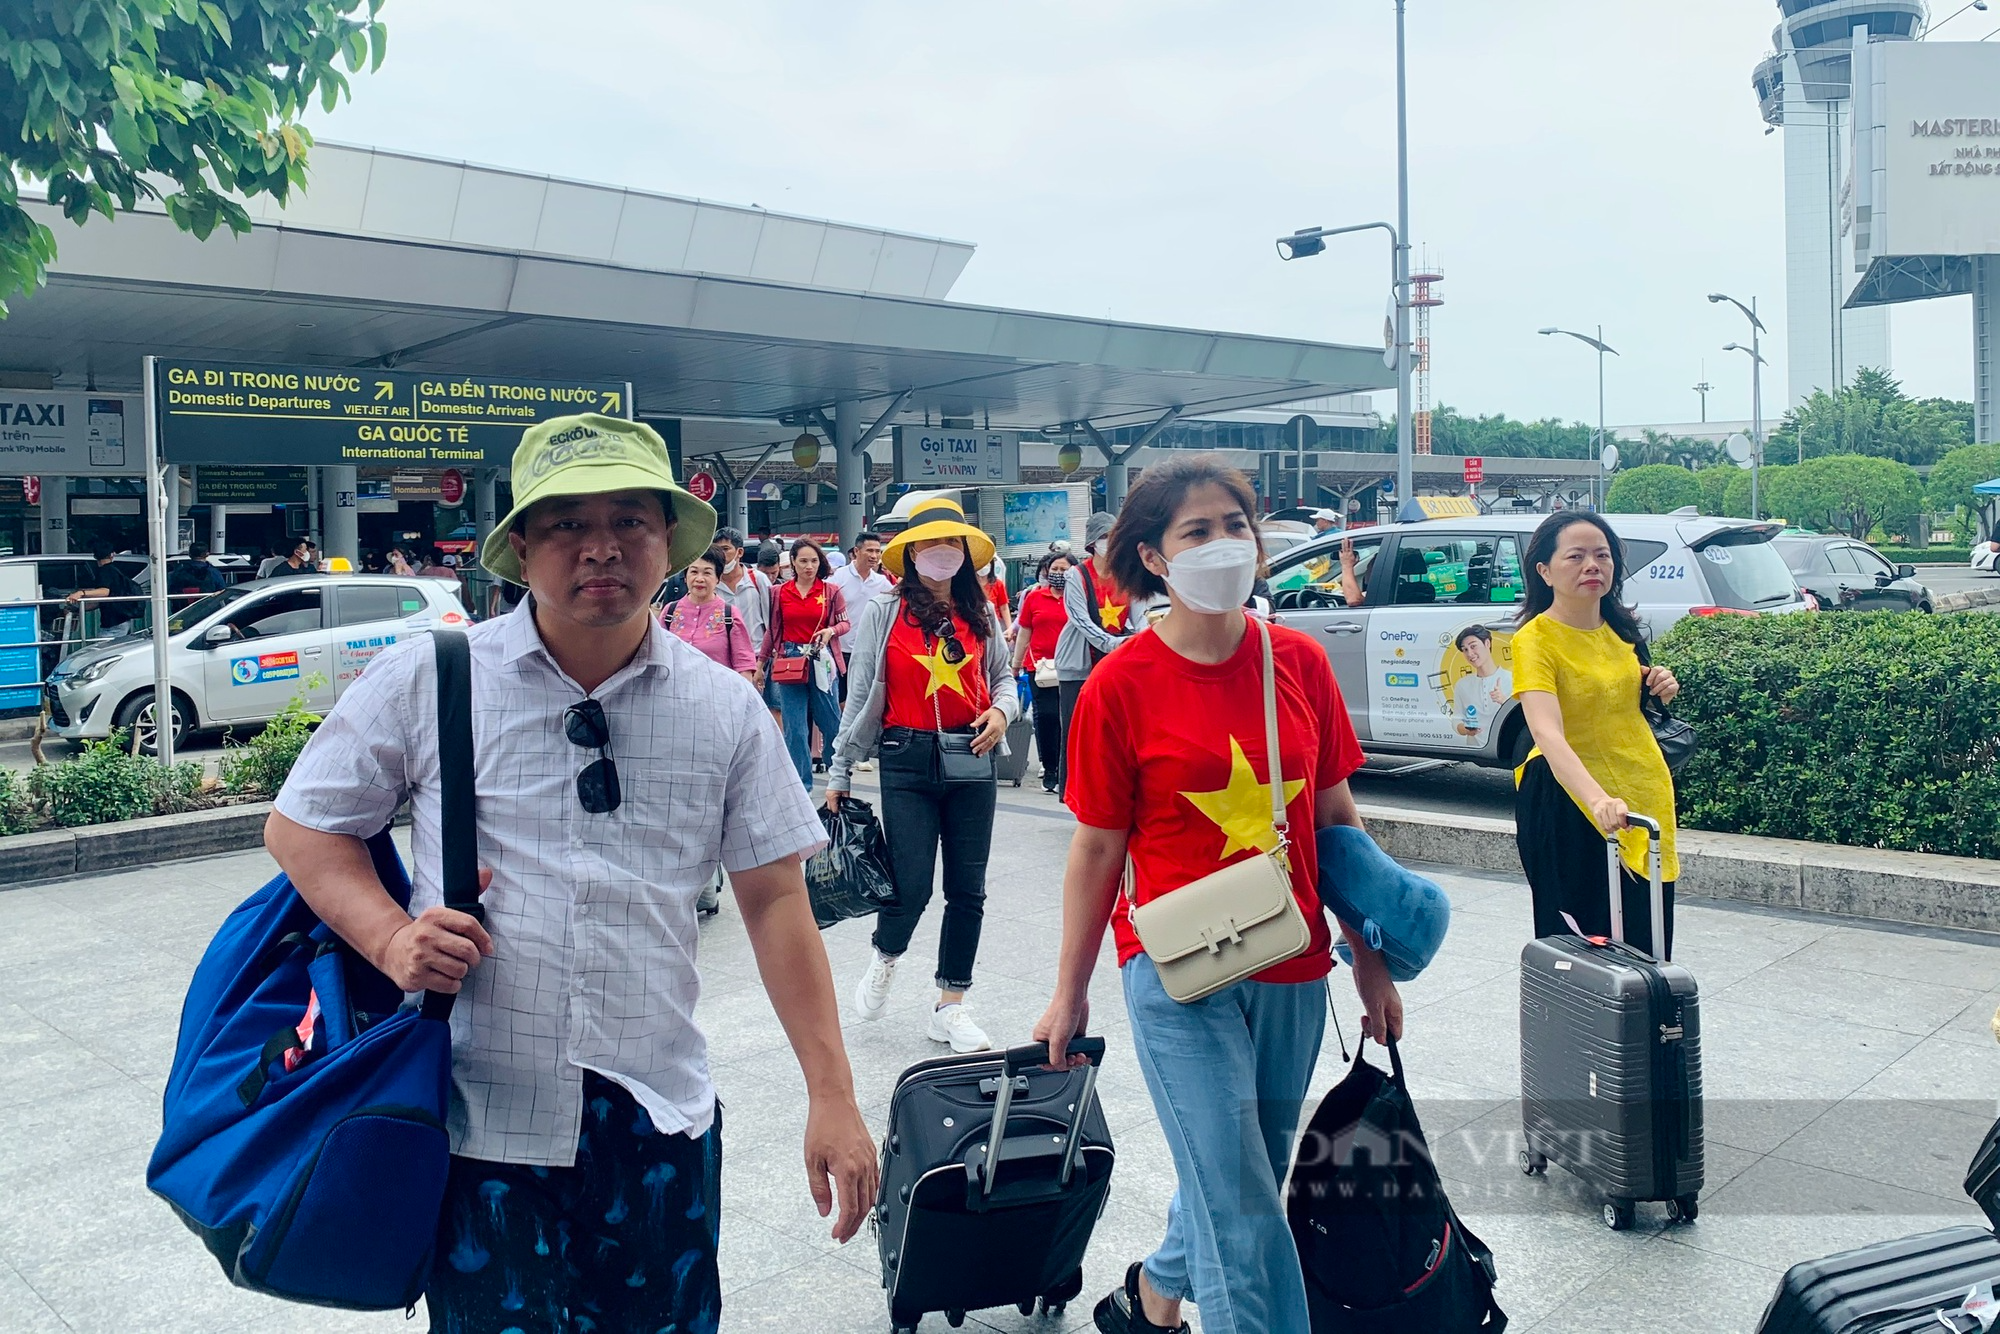 Vào hè, lượng khách qua sân bay Tân Sơn Nhất tăng đột biến - Ảnh 3.